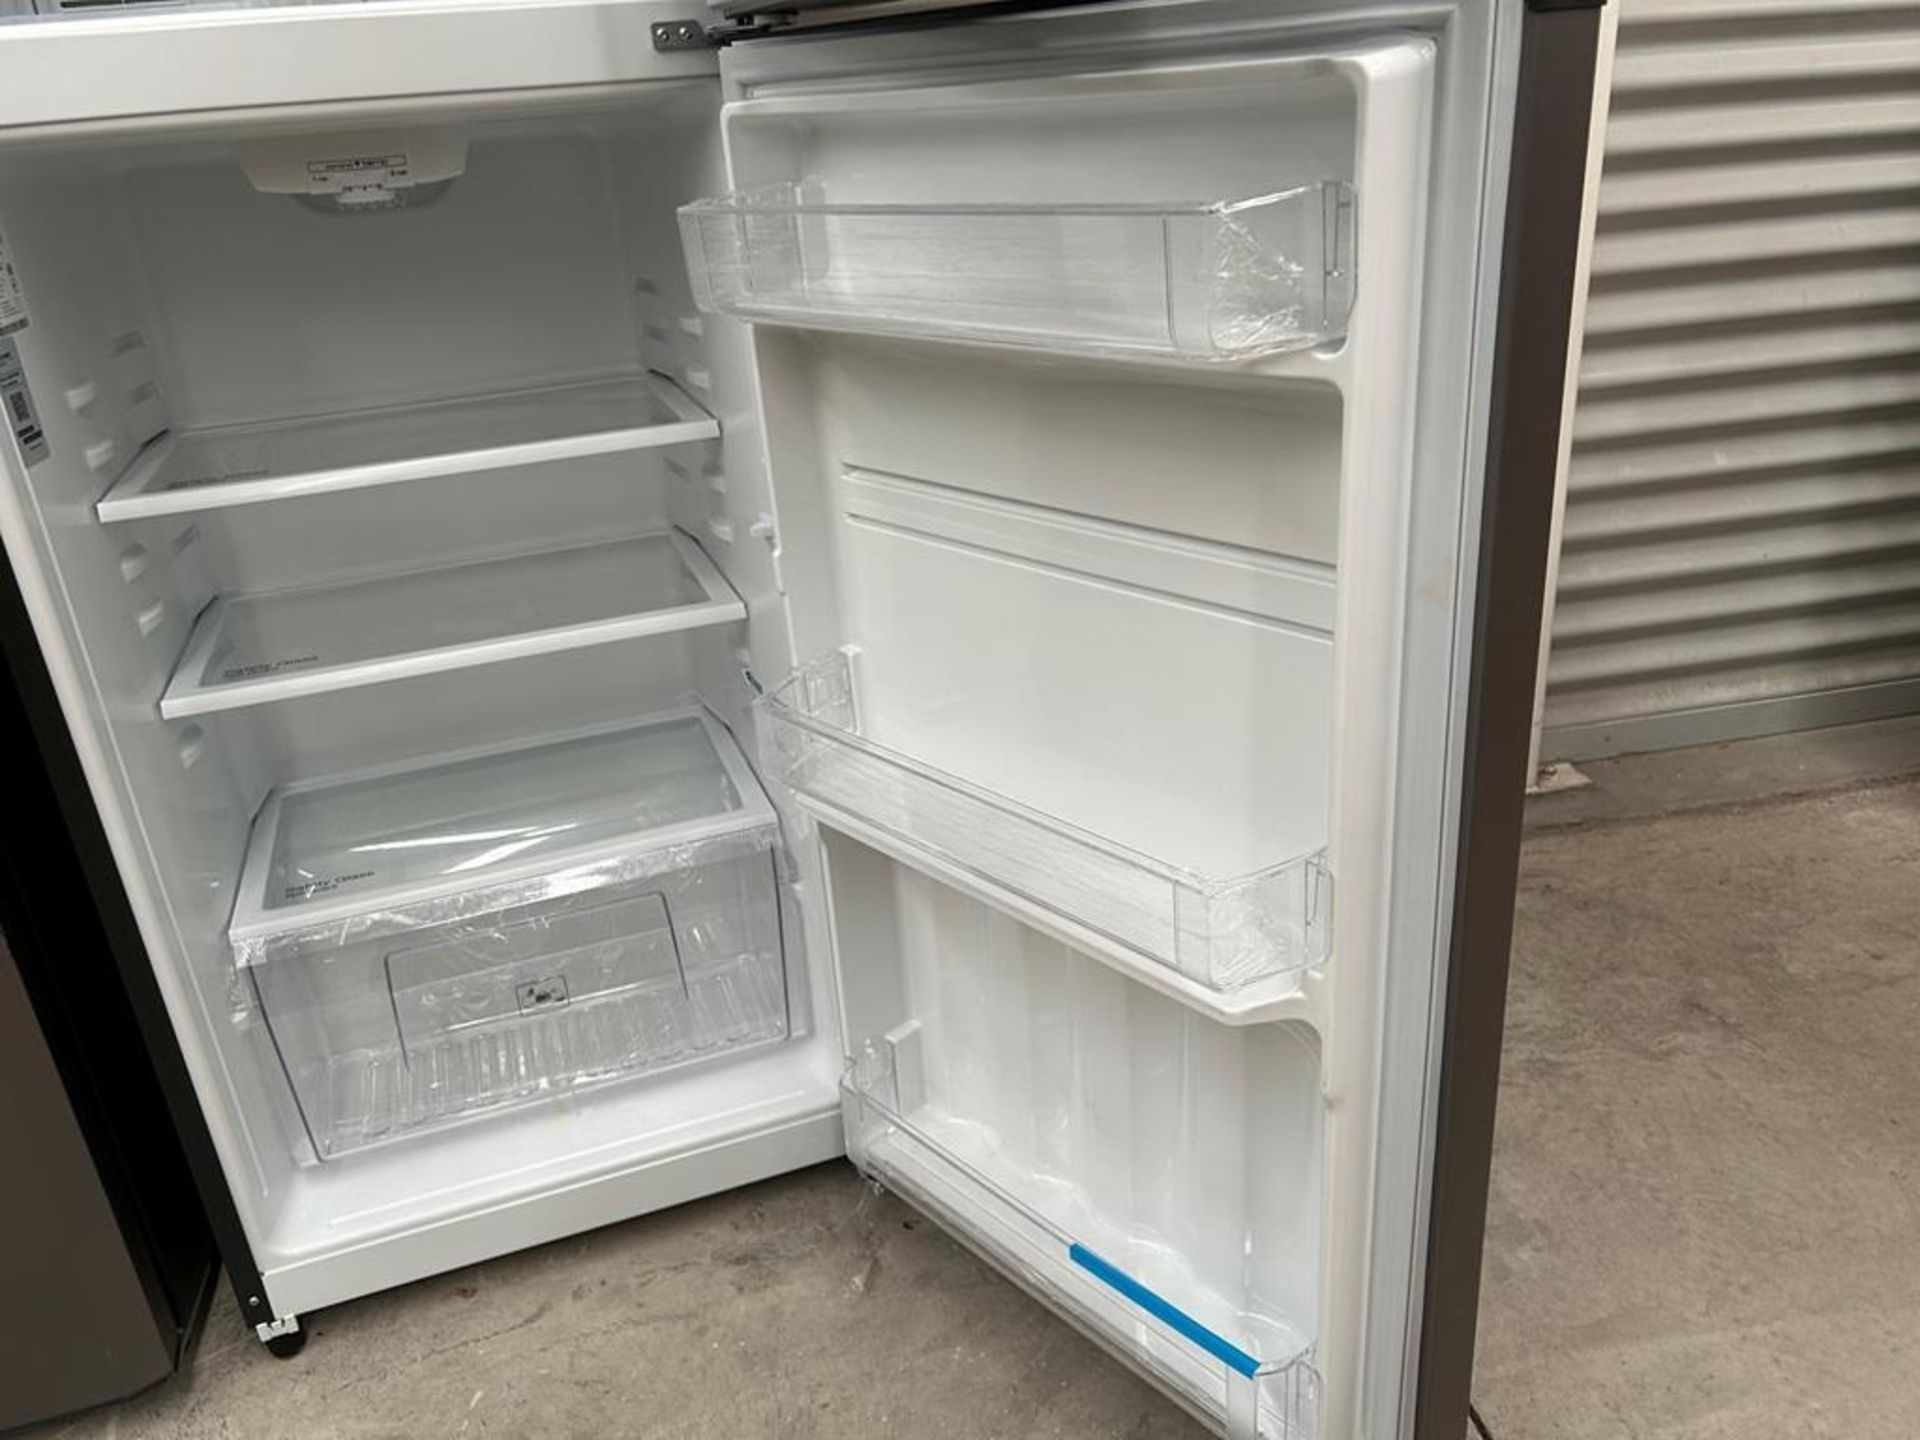 Lote de 2 refrigeradores contiene: 1 Refrigerador Marca MABE, Modelo RME360PVMRM0, Serie 01177, Col - Image 14 of 18